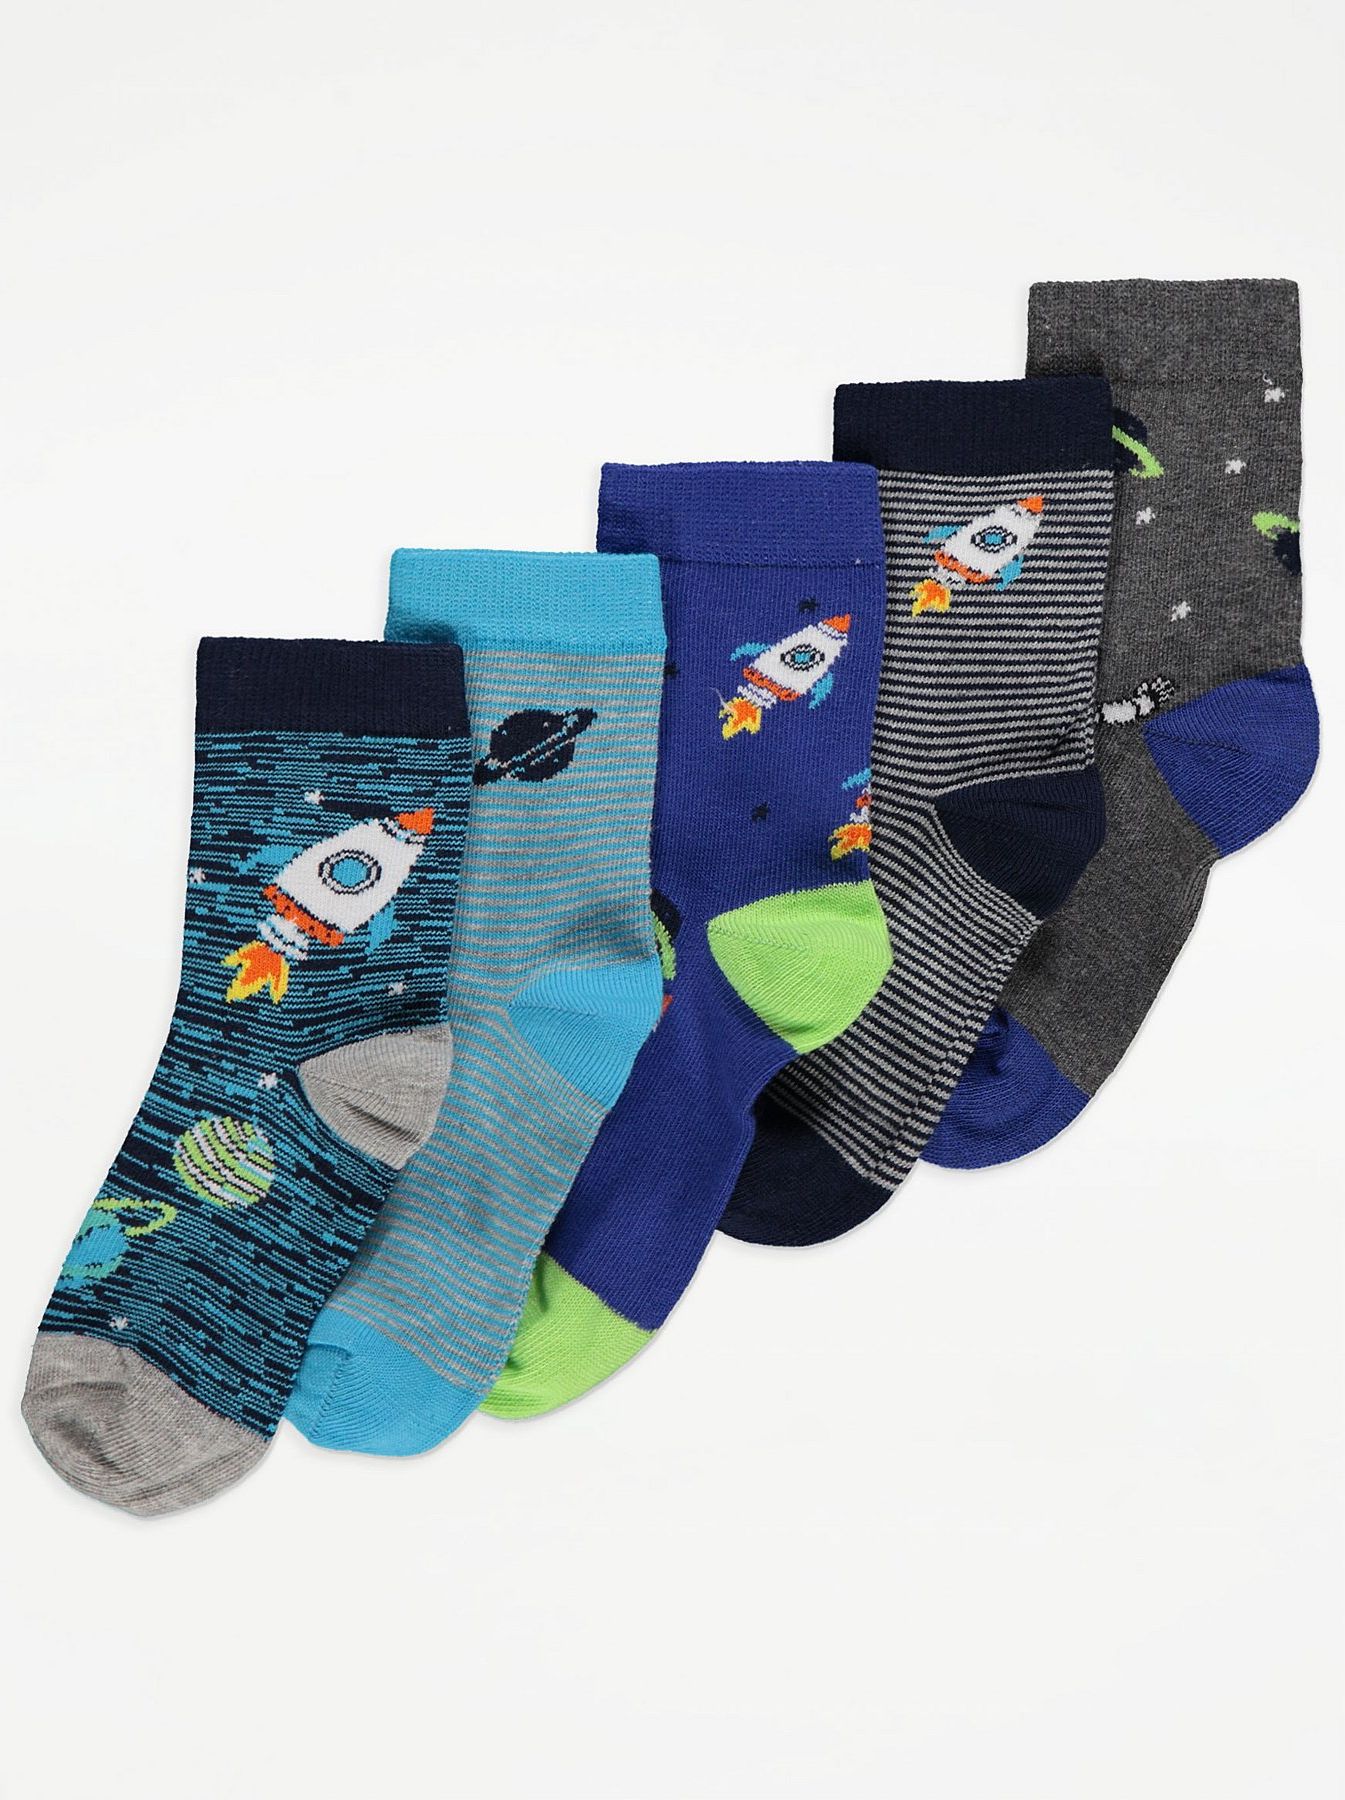 Chlapecké ponožky GEORGE, 5 ks v balení, motiv rakety Velikost: EU 19 - 22.5 (1.5 - 2 roky) - obrázek 1